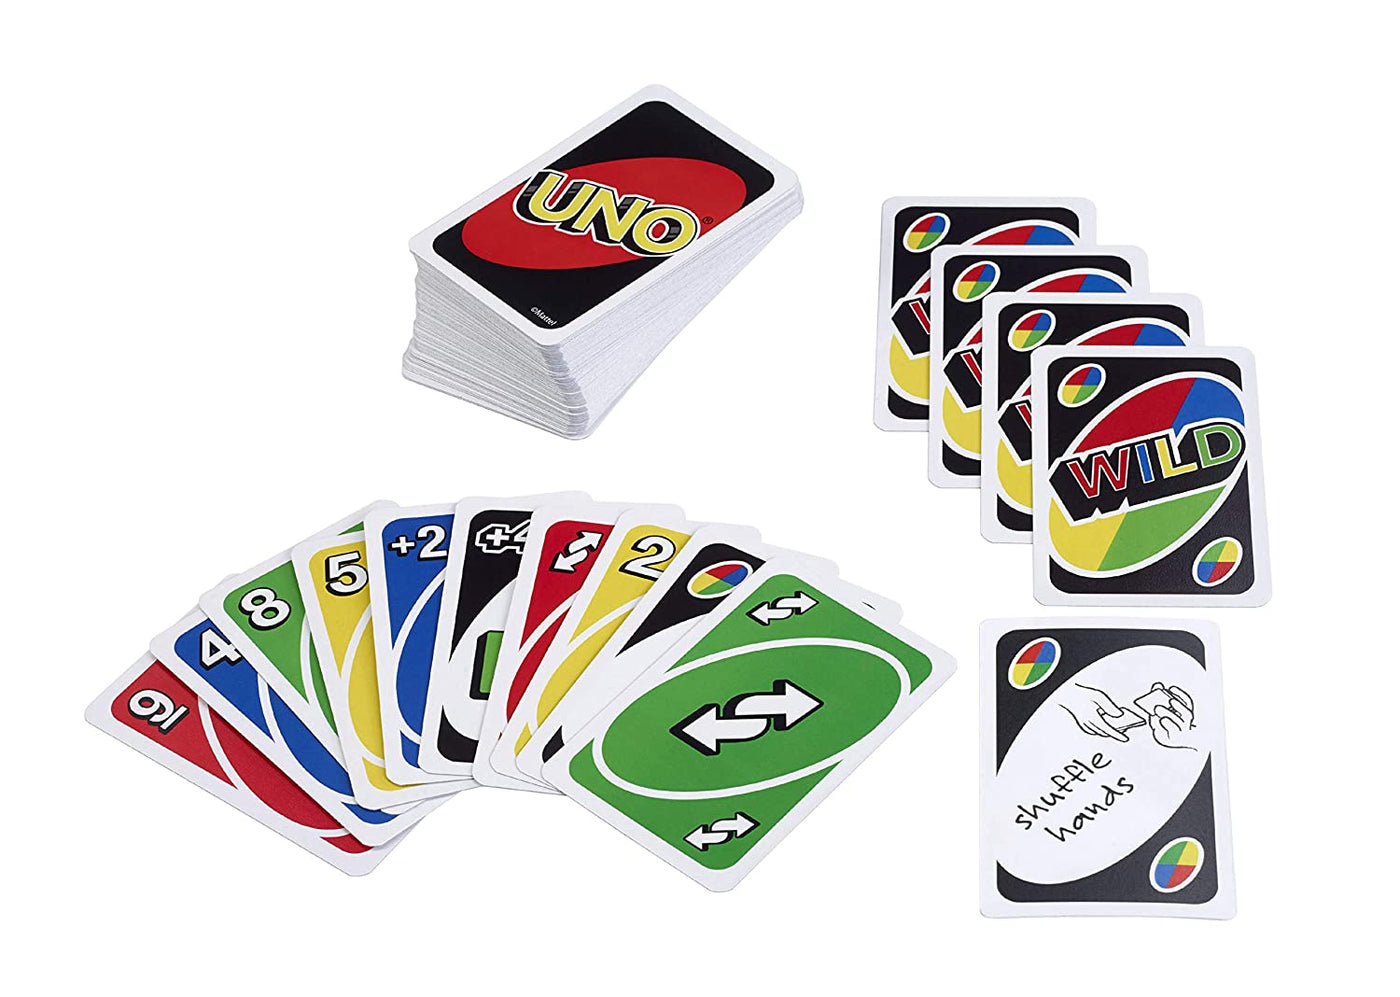 UNO: Playing Card Game | Mattel